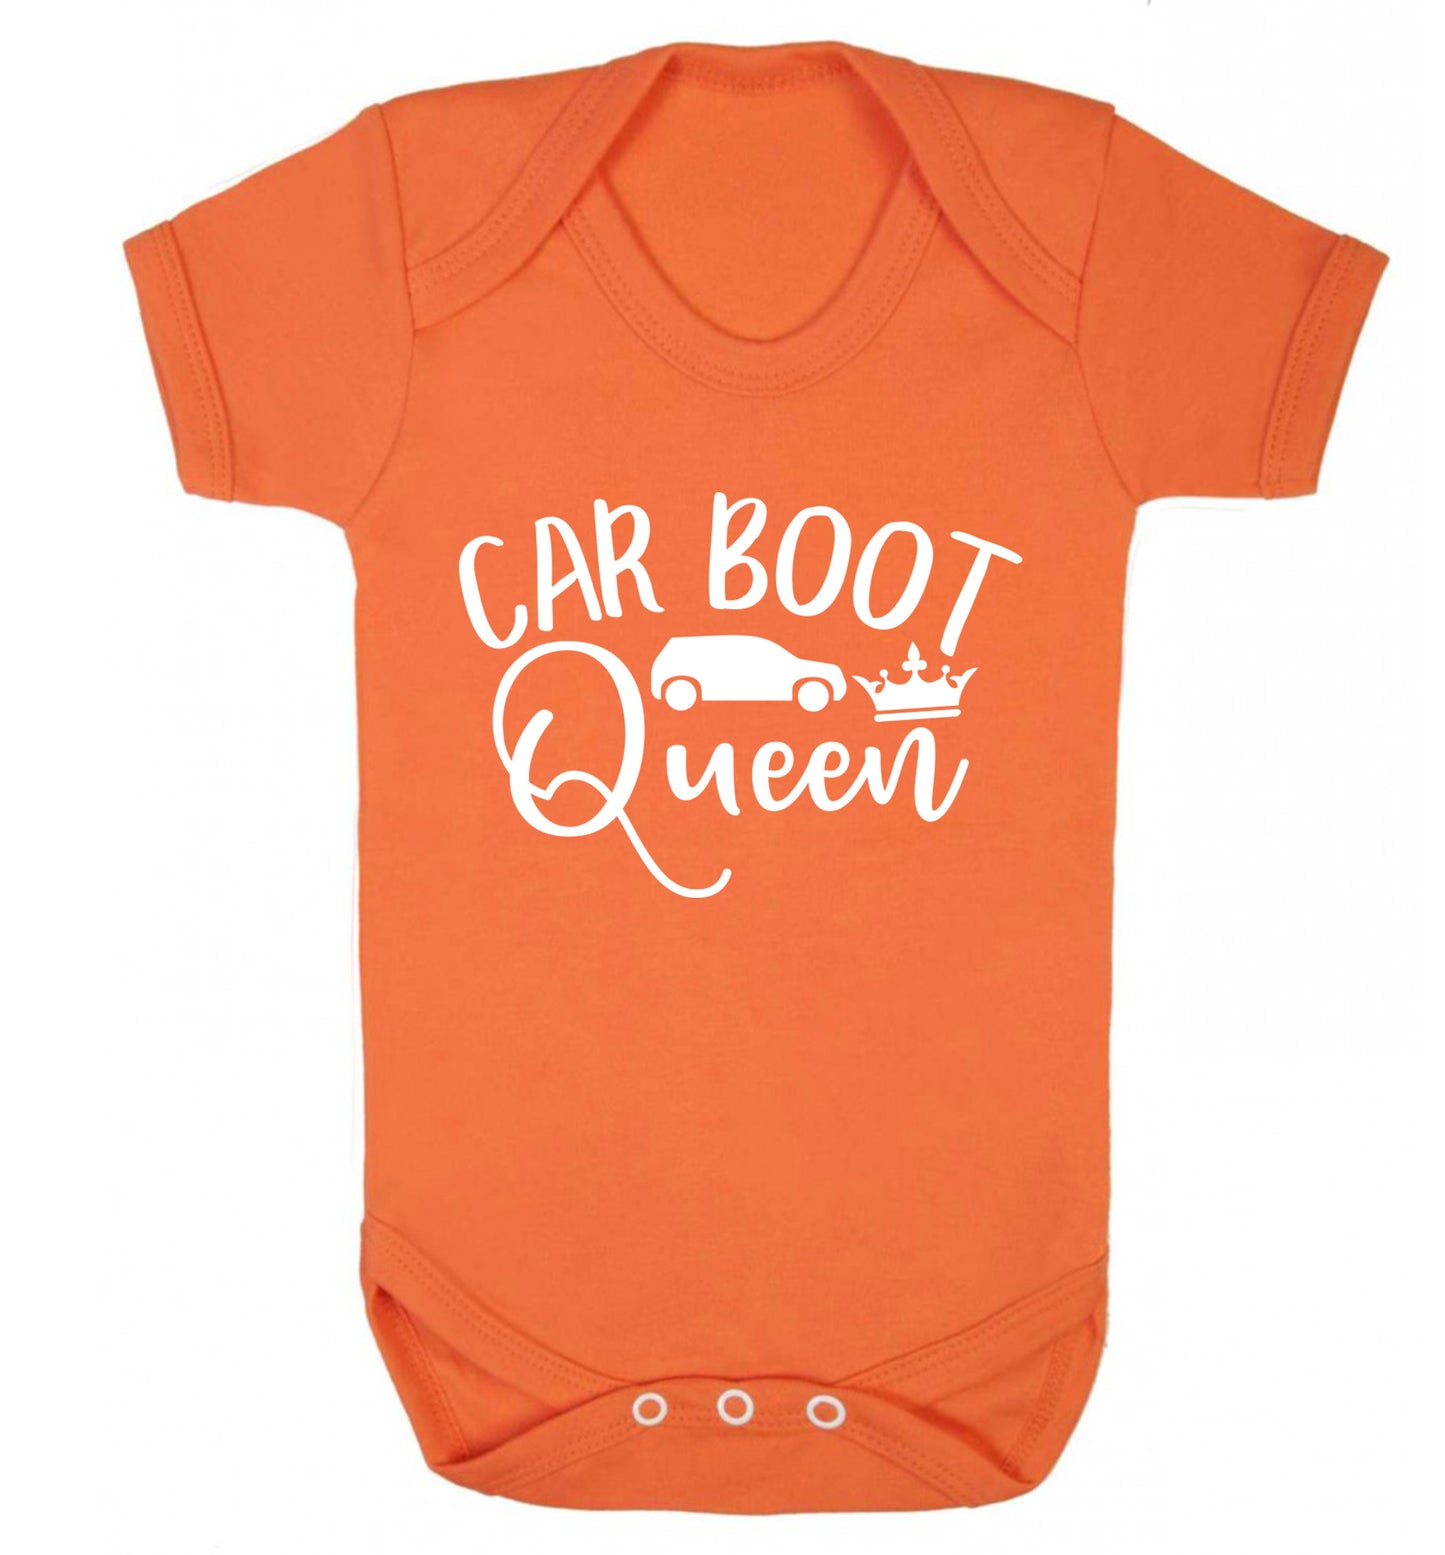 Carboot Queen Baby Vest orange 18-24 months